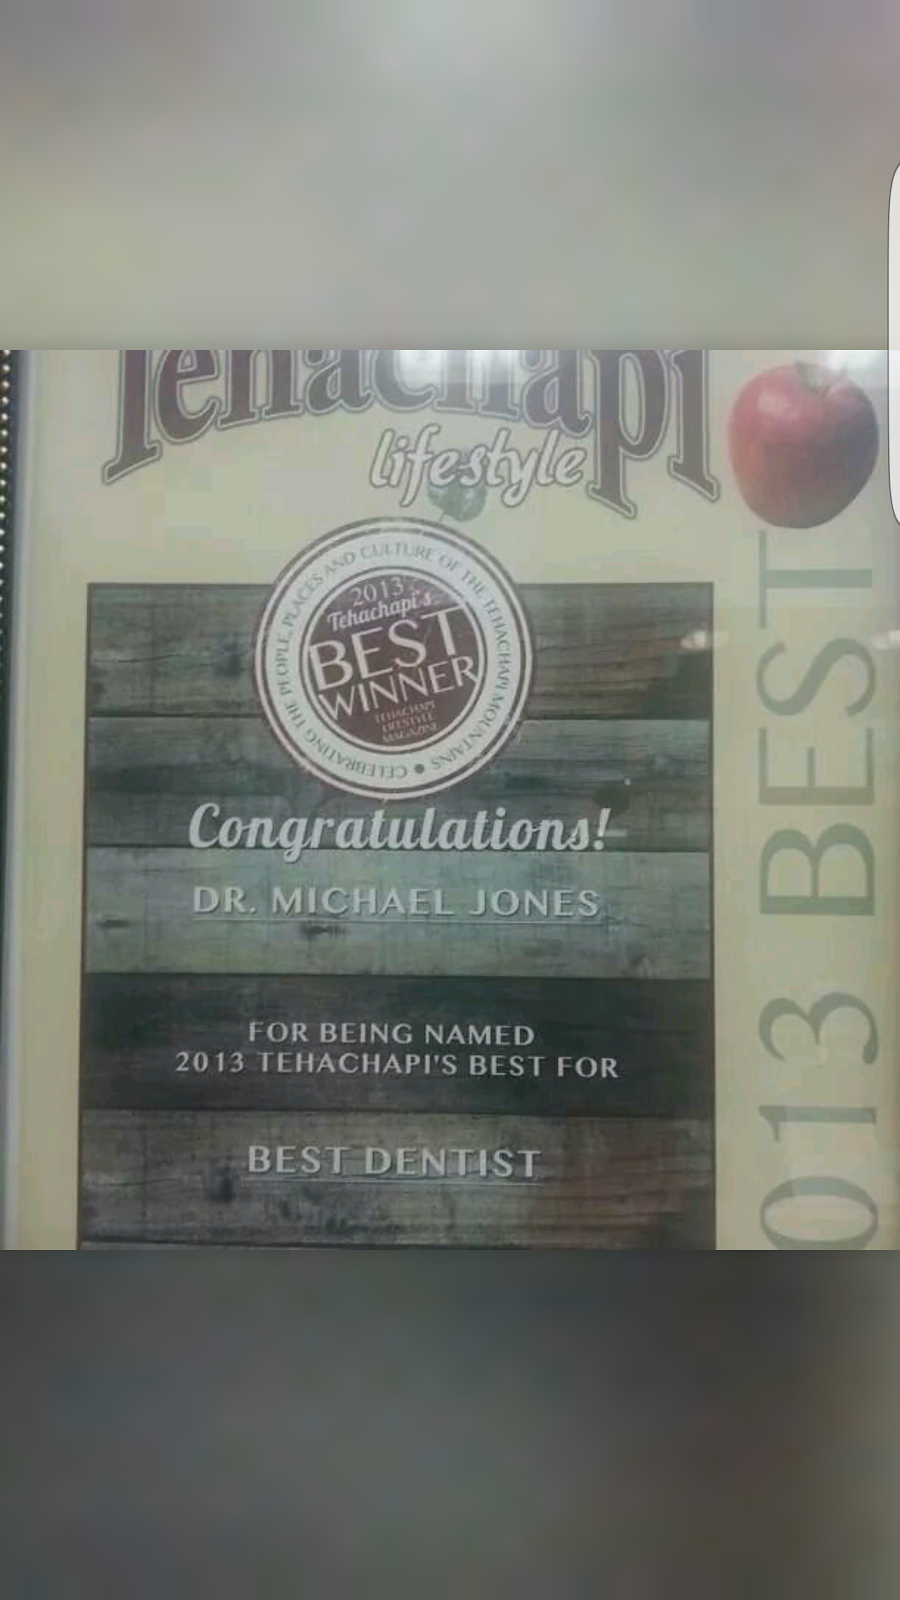 Old Towne Dental: Jones Michael B DDS | 20406 Brian Way # 2C, Tehachapi, CA 93561 | Phone: (661) 822-6706